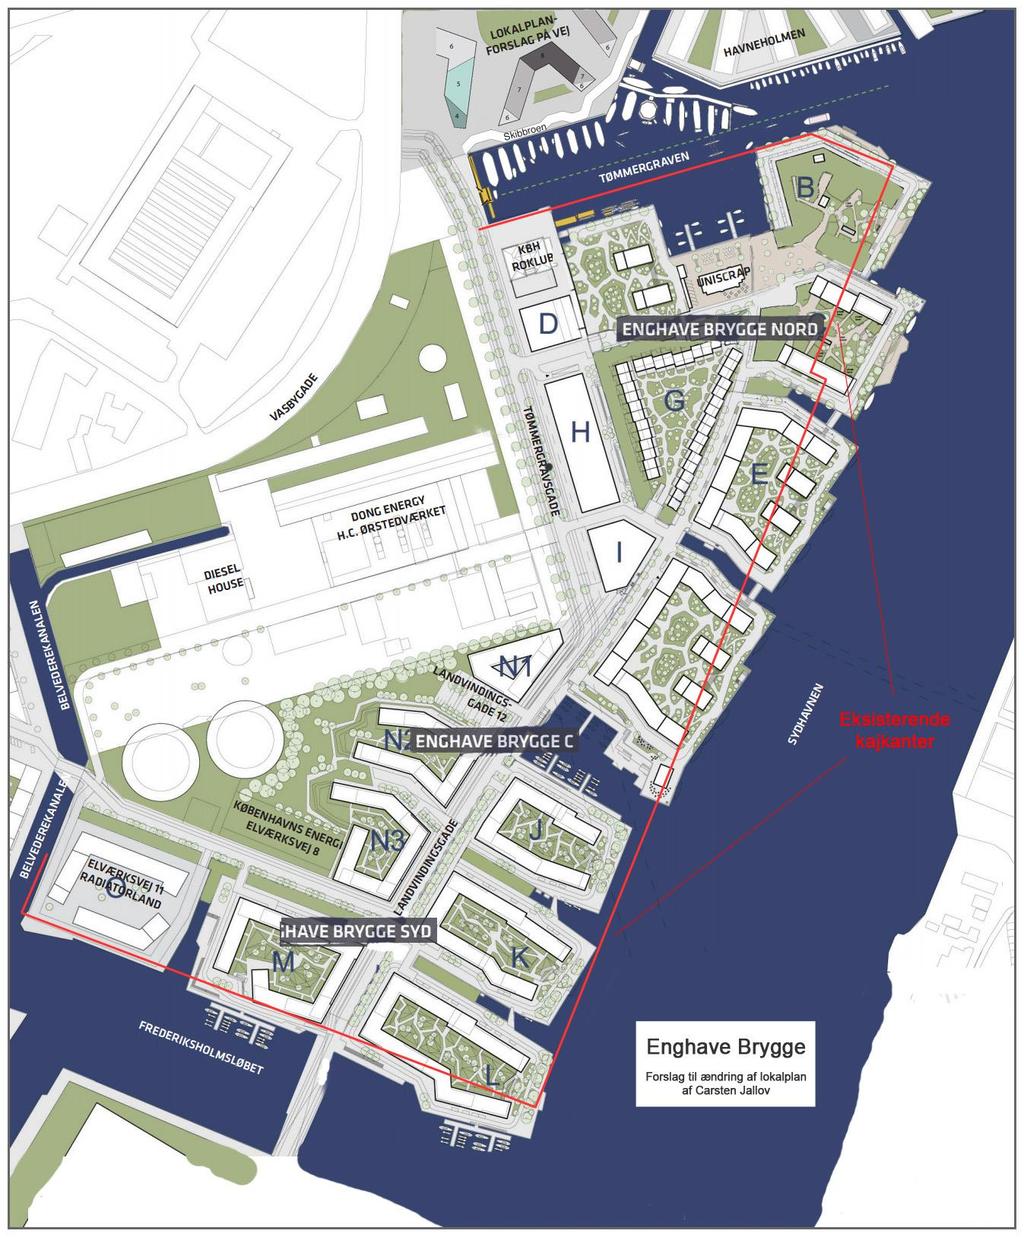 Bilag: Forslag til ændring af lokalplan for Enghave Brygge Nedenstående tegning af Enghave Brygge uden overflødige kanaler